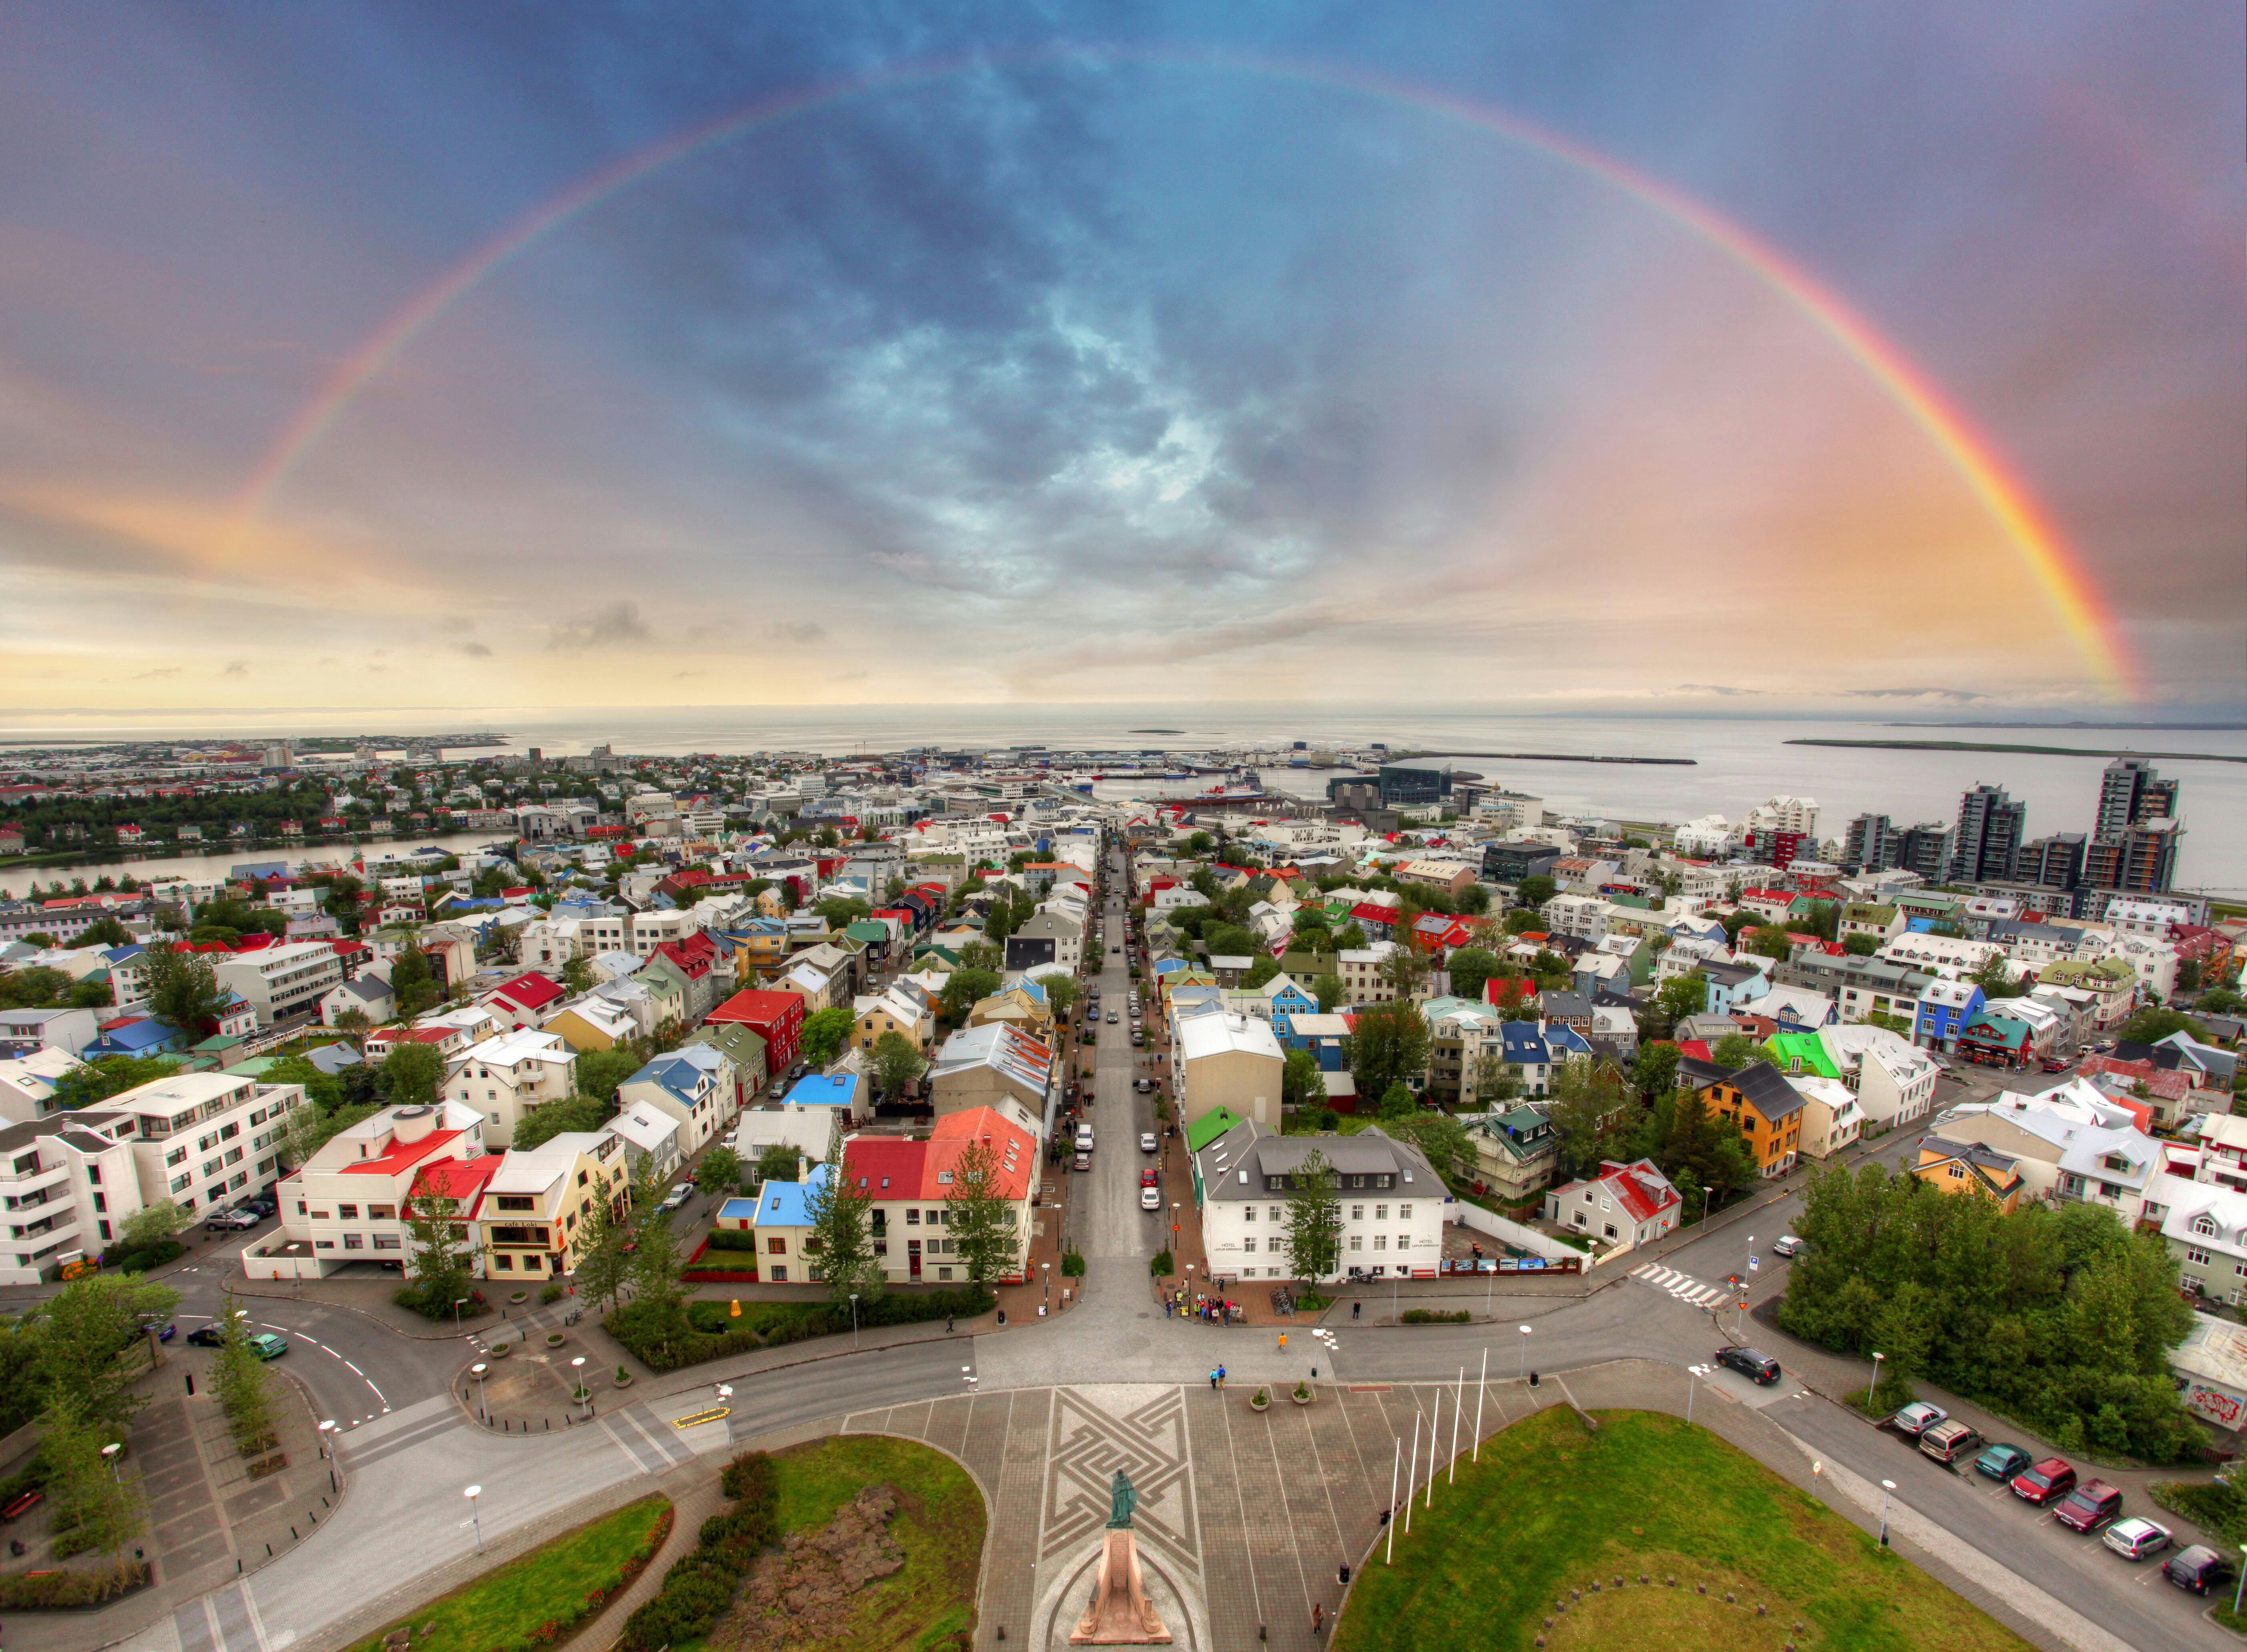 Ein spektakulärer Regenbogen spannt sich über den Himmel über den bunten Dächern der Stadt Reykjavík, gesehen von der Kirche Hallgrímskirkja aus.